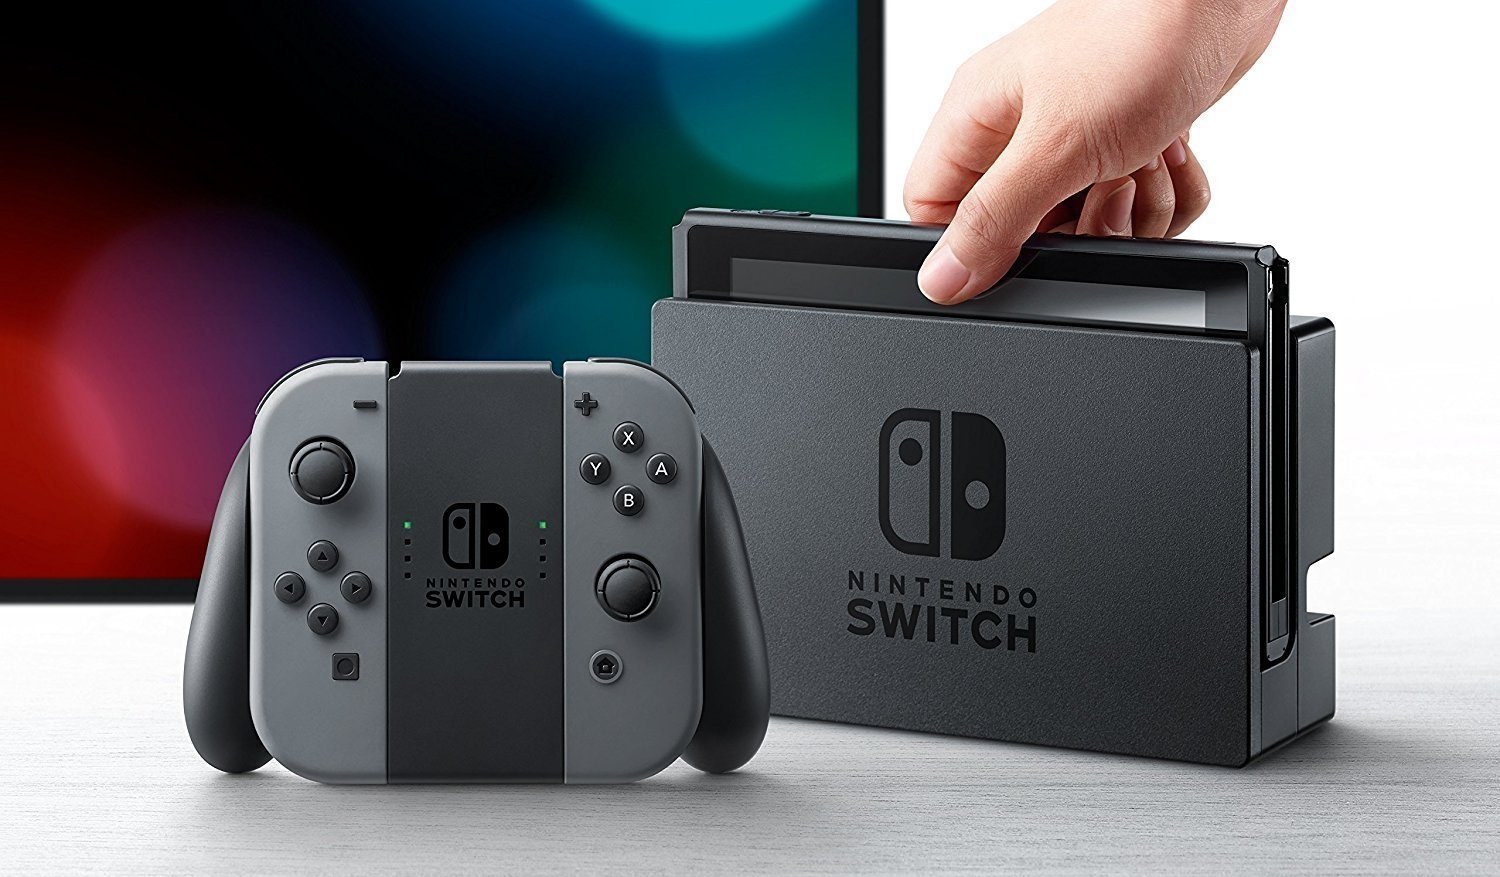 Ya existe una comunidad que se dedica a encontrar Nintendo Switch perdidas por el mundo